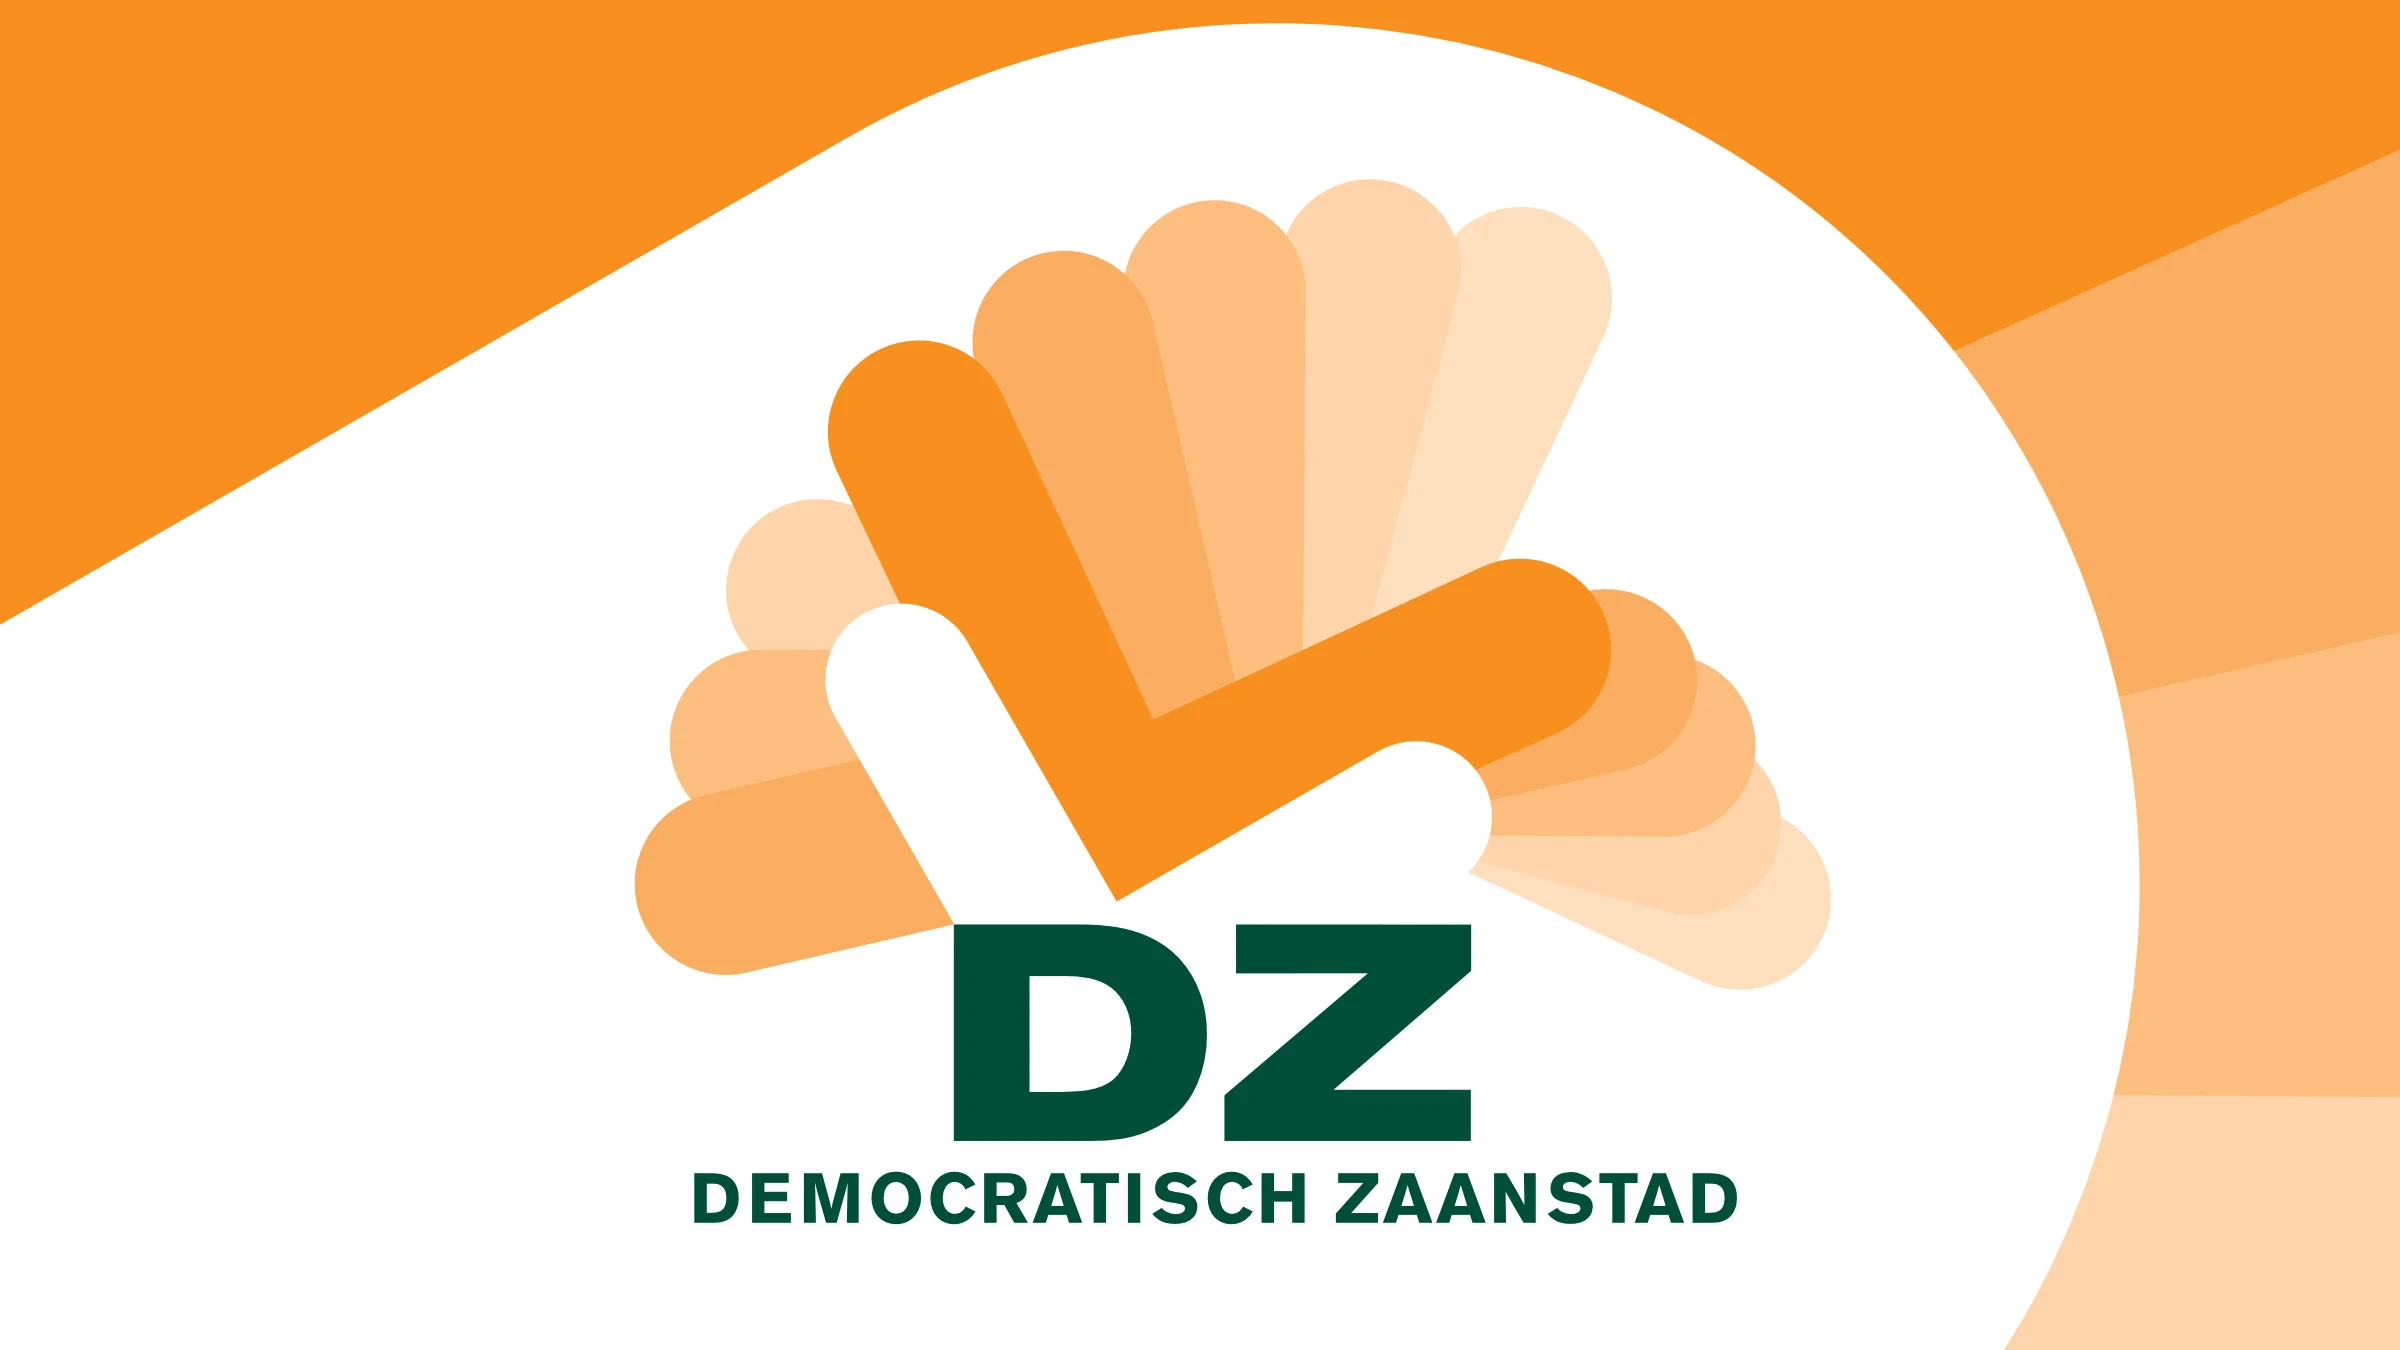 (c) Democratischzaanstad.nl